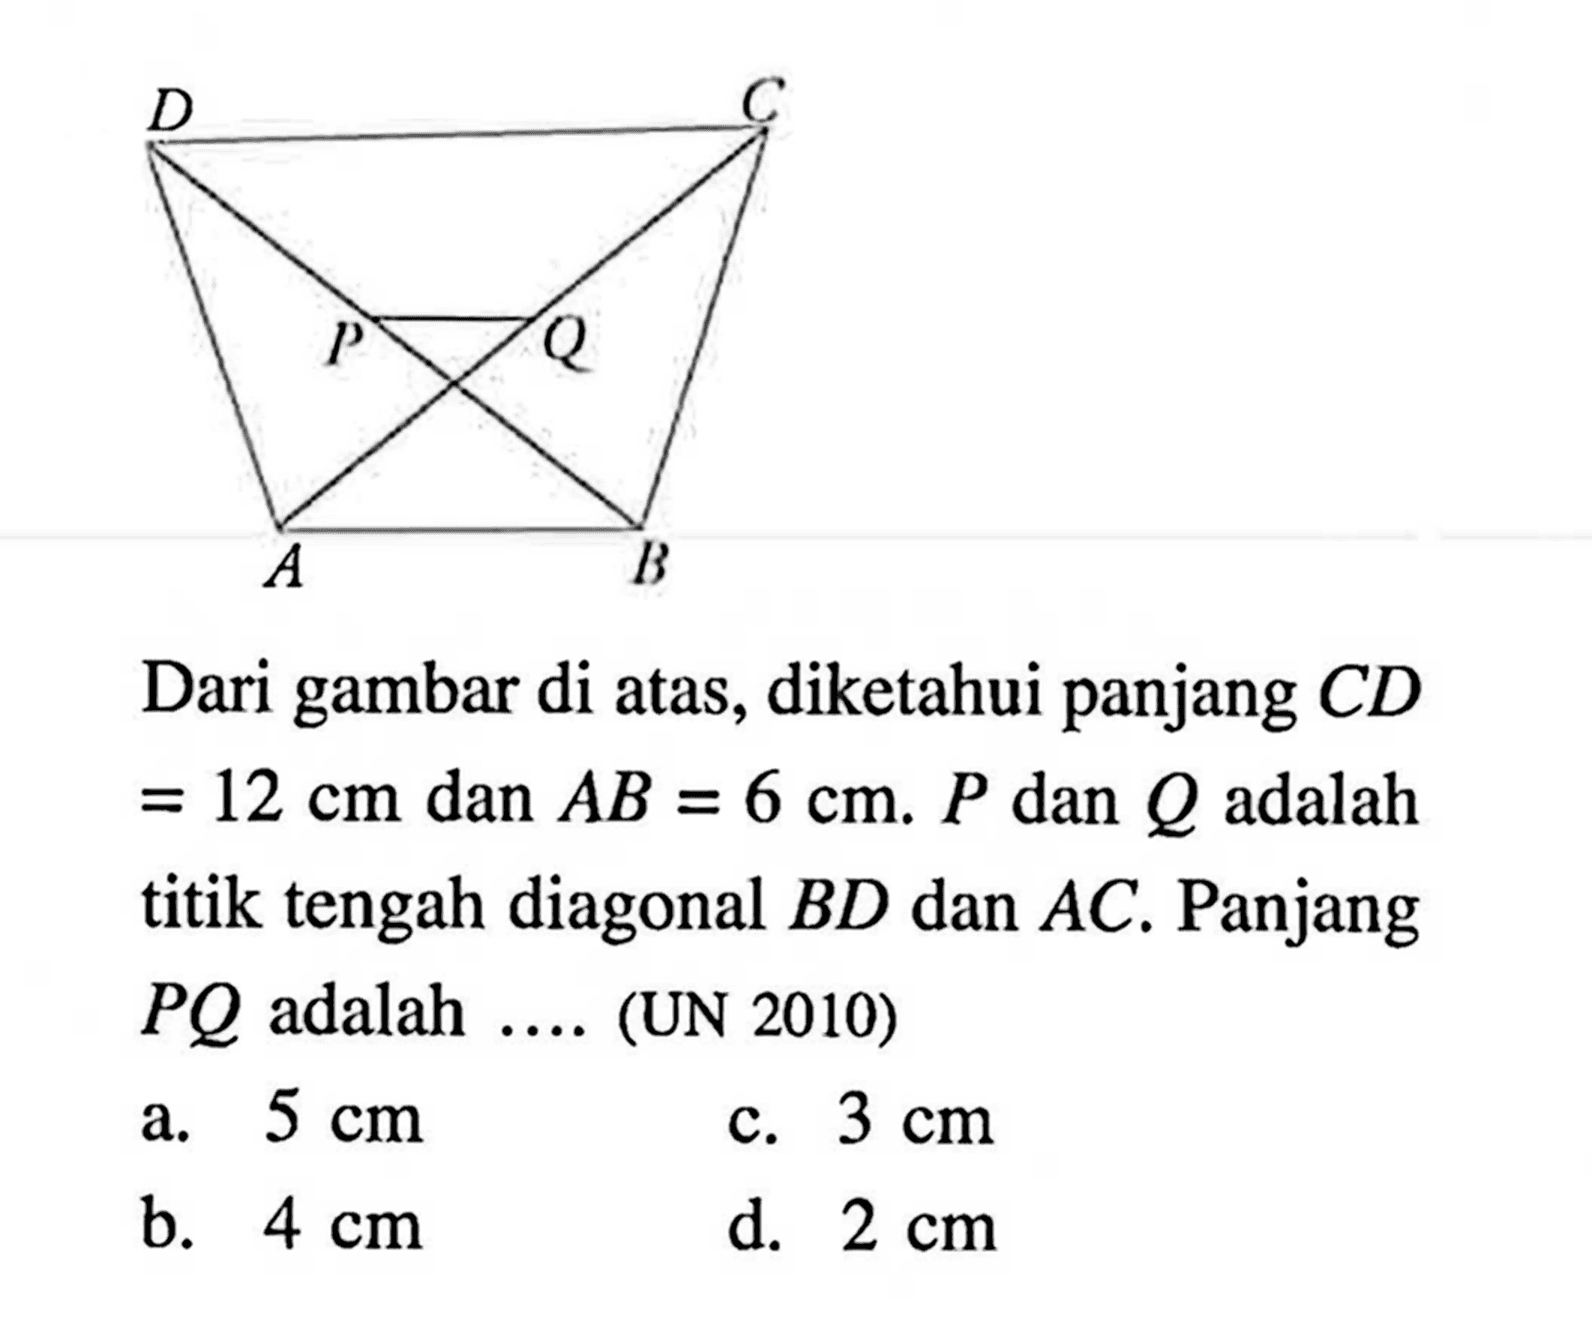 Dari gambar di atas, diketahui panjang CD=12 cm dan AB=6 cm. P dan Q adalah titik tengah diagonal BD dan AC. Panjang PQ adalah .... (UN 2010)